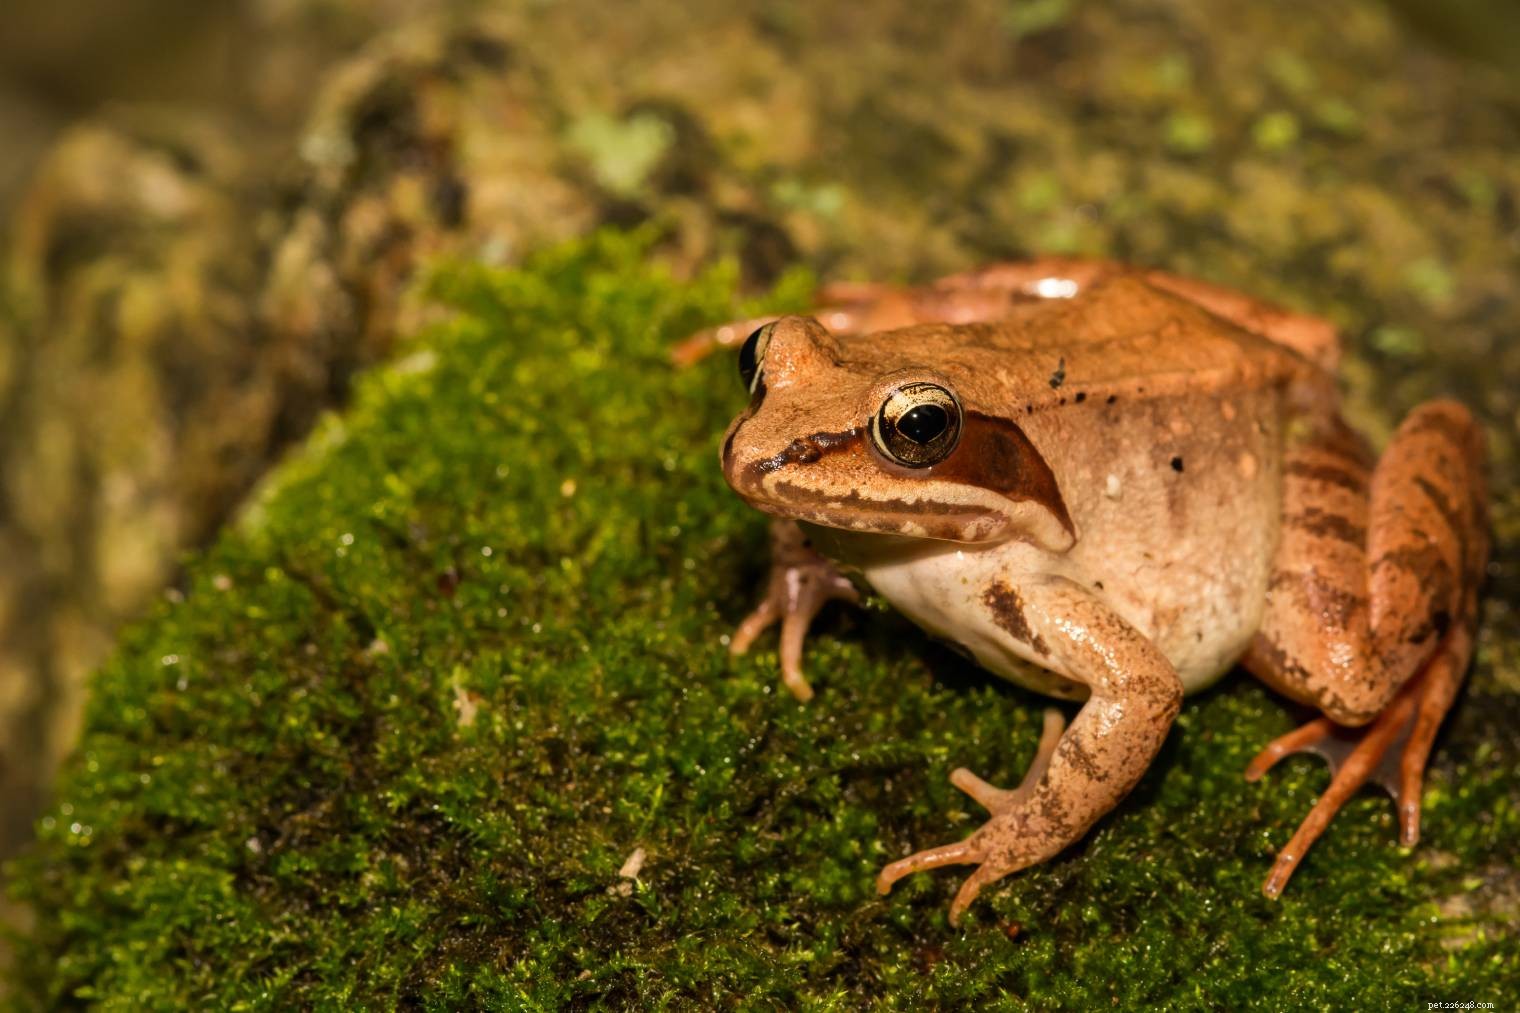 메릴랜드에서 발견된 10종의 개구리(사진 포함)